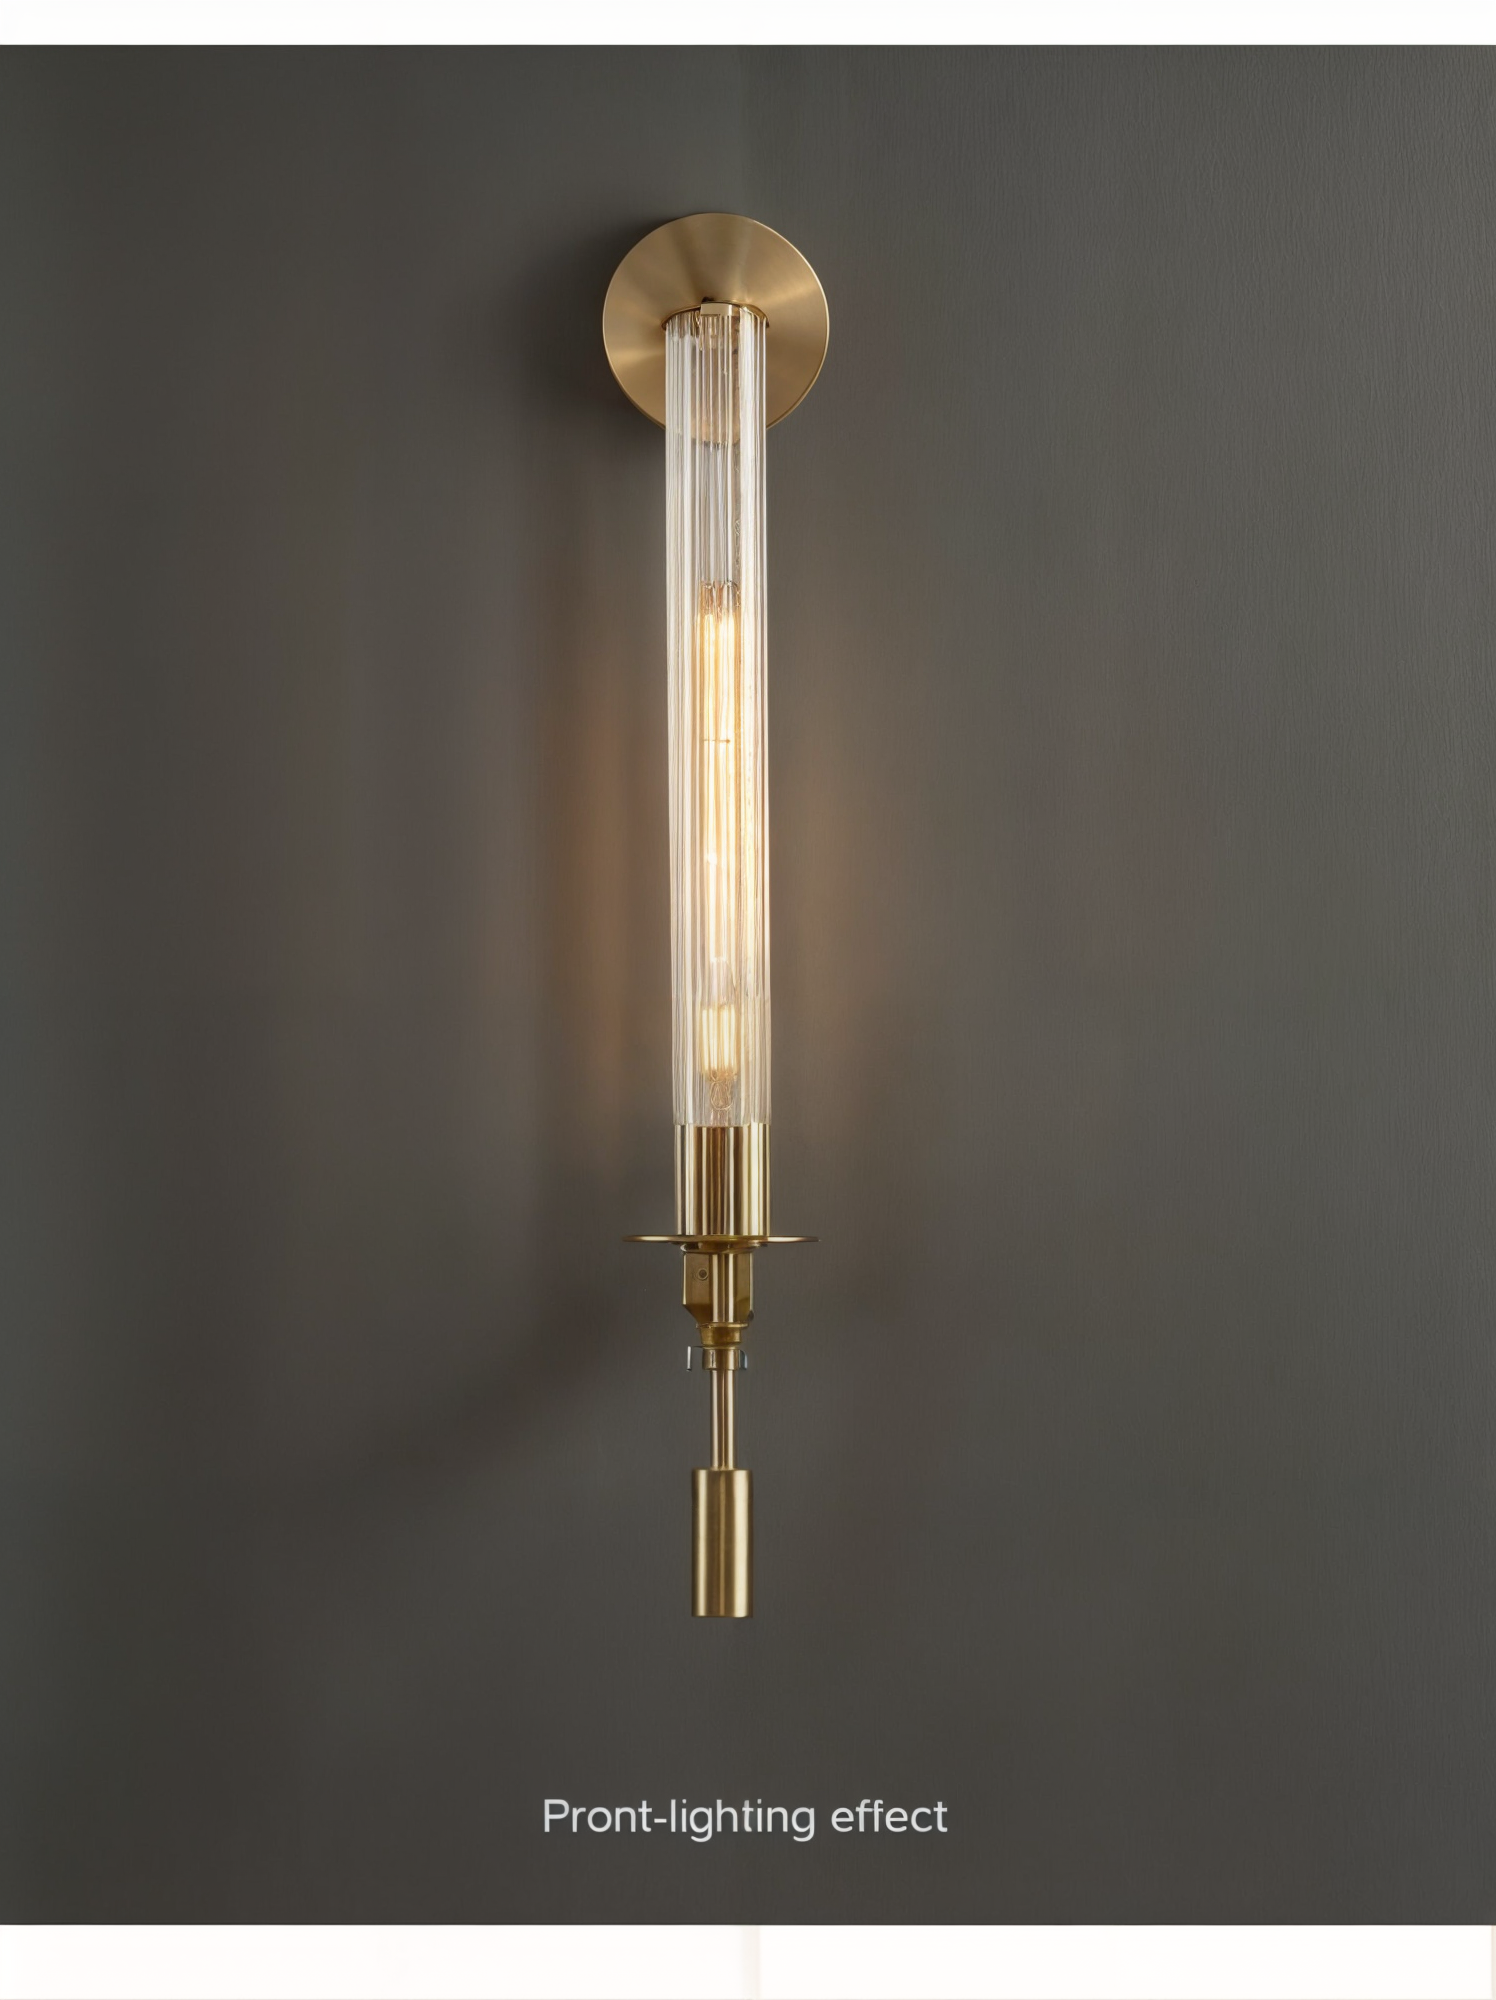 Moderne Wandleuchte Wandlampen aus Eisen und Glas | E27, 90-260V | Nordic Stil für Wohnzimmer, Schlafzimmer | Wandmontage, LED